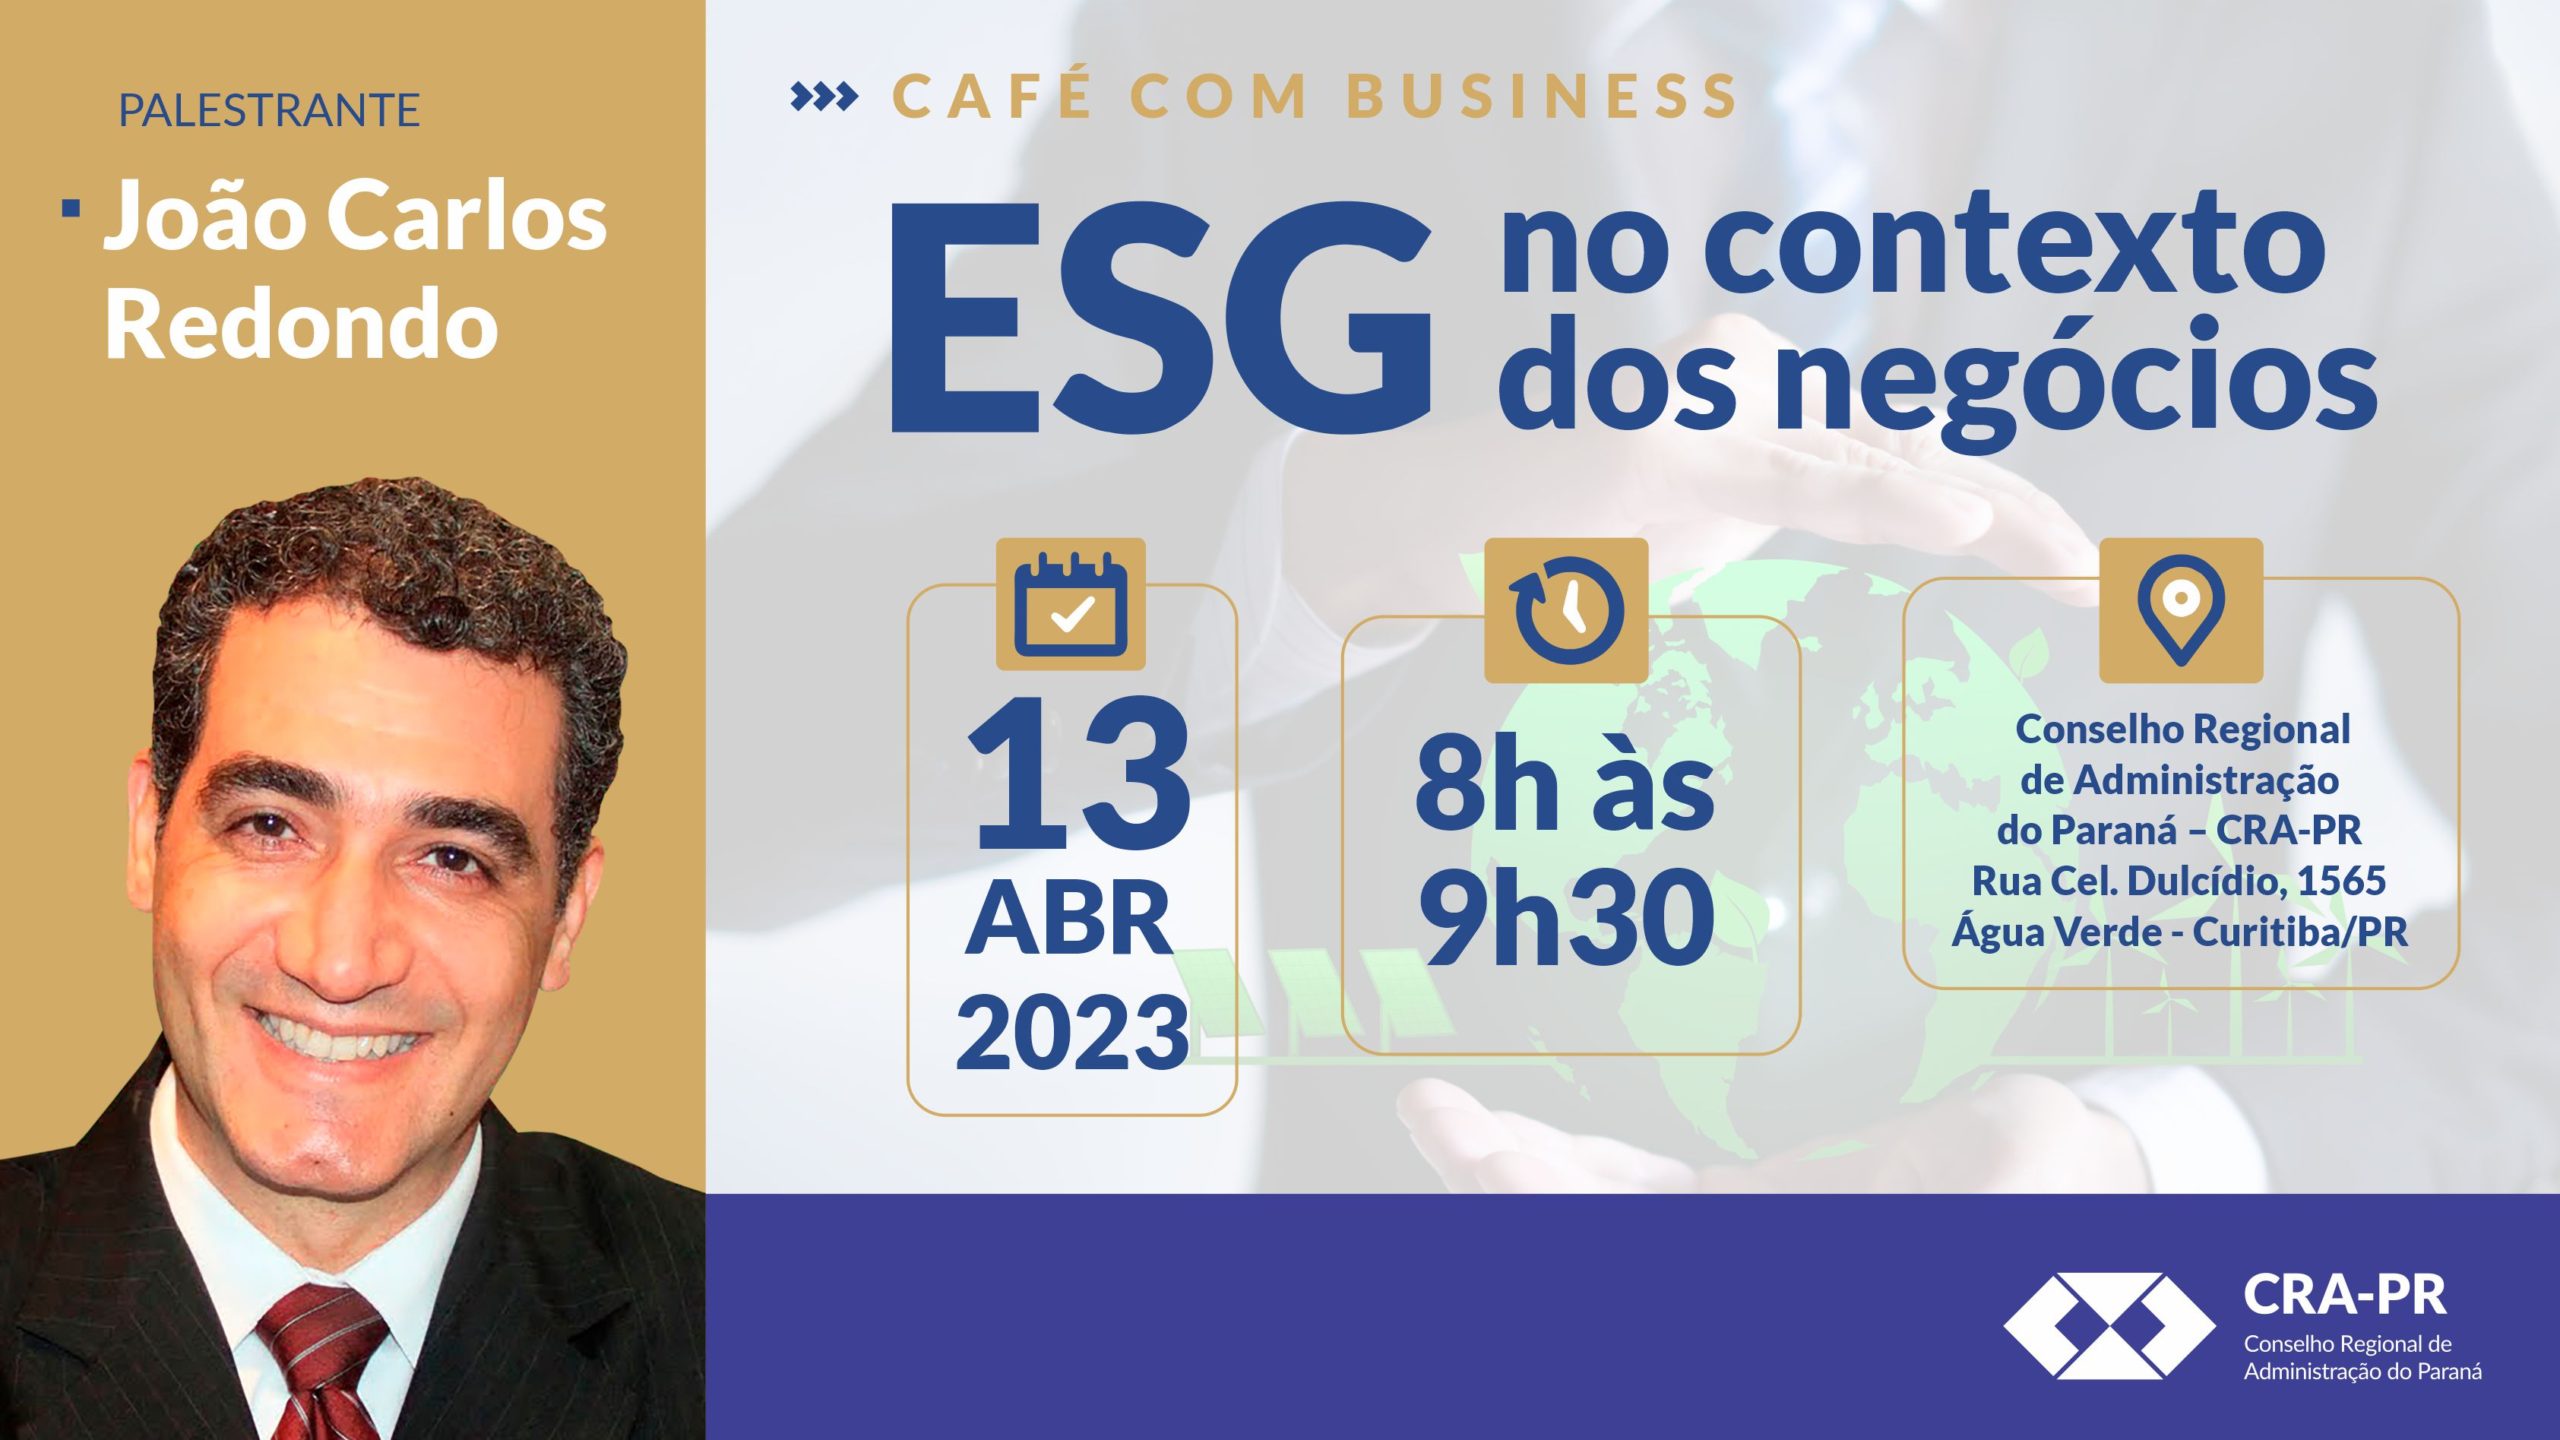 You are currently viewing Café com Business – ESG no contexto dos negócios